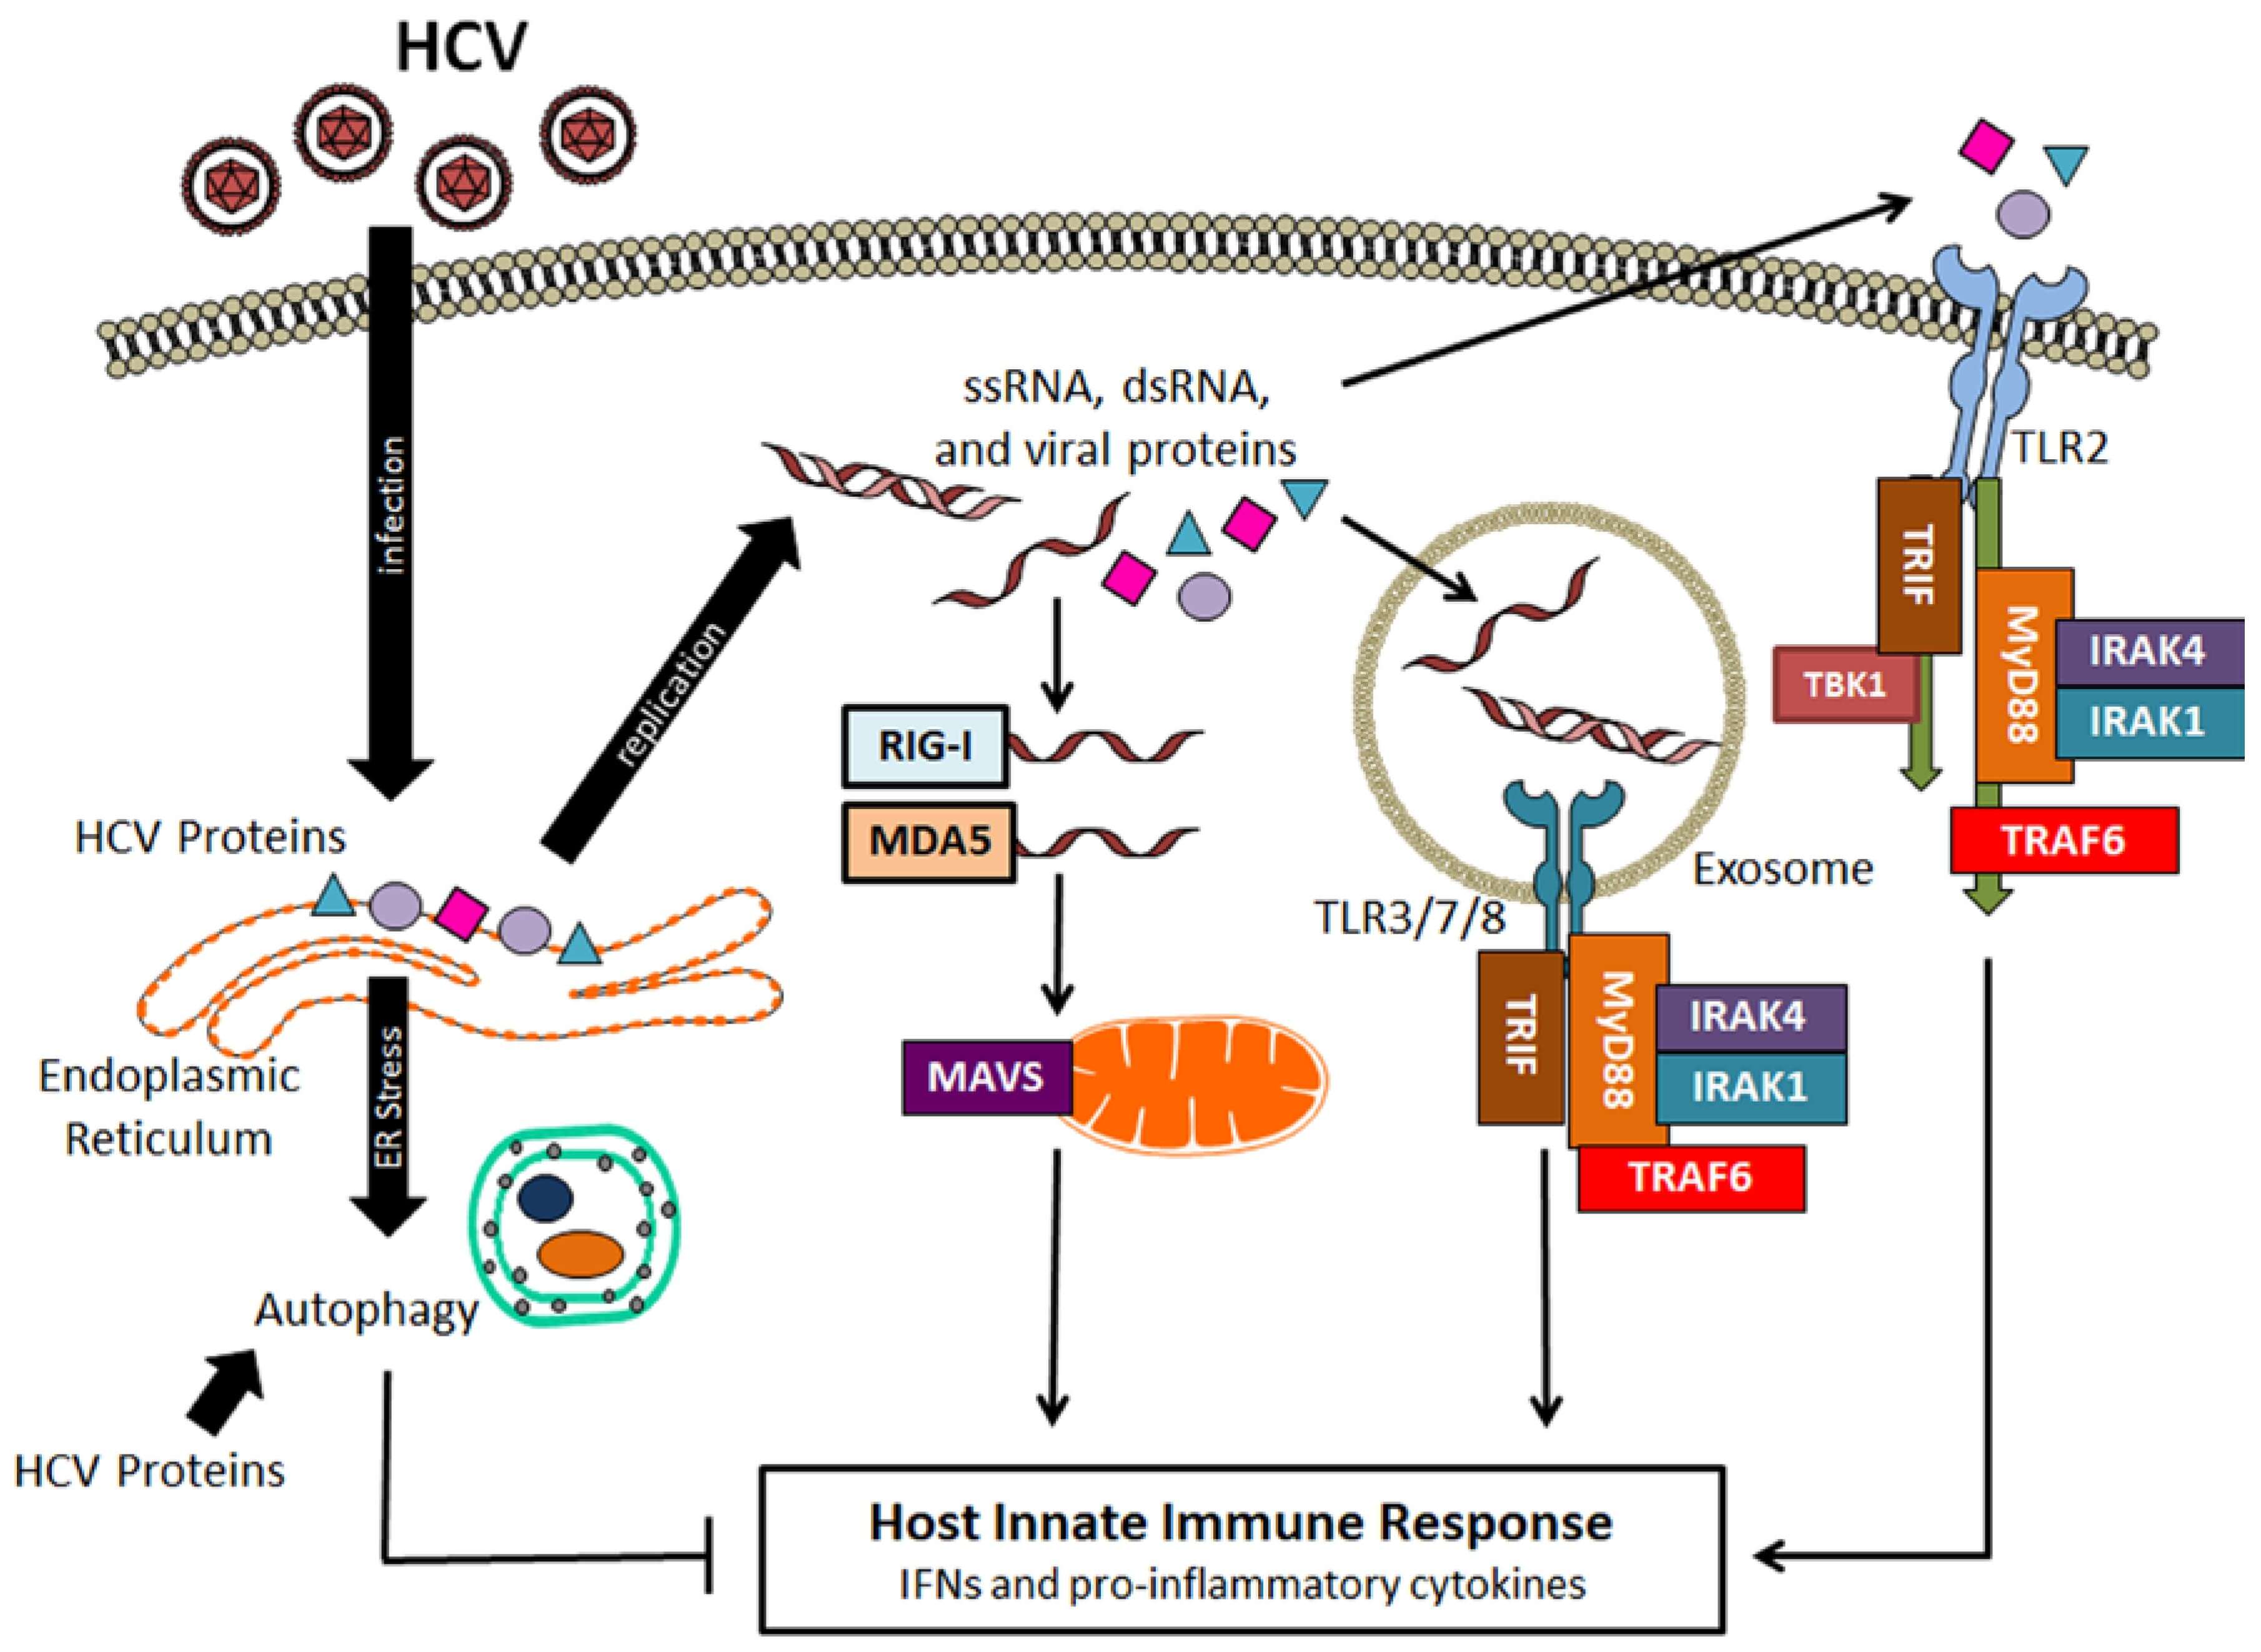 The host innate immune response for the infection of Hepatitis C Virus.